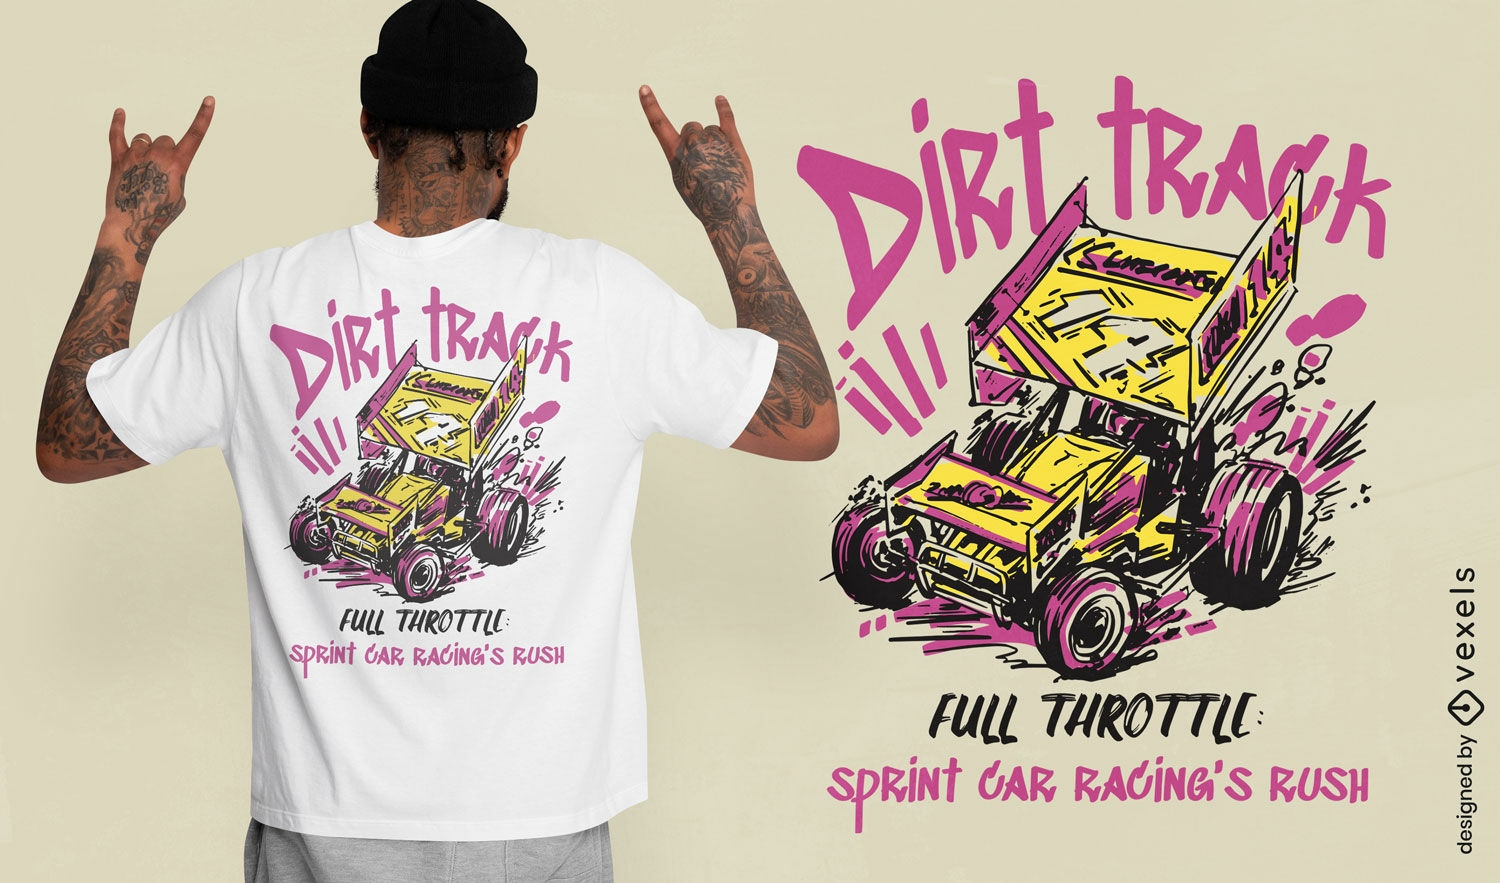 Full throttle t-shirt design